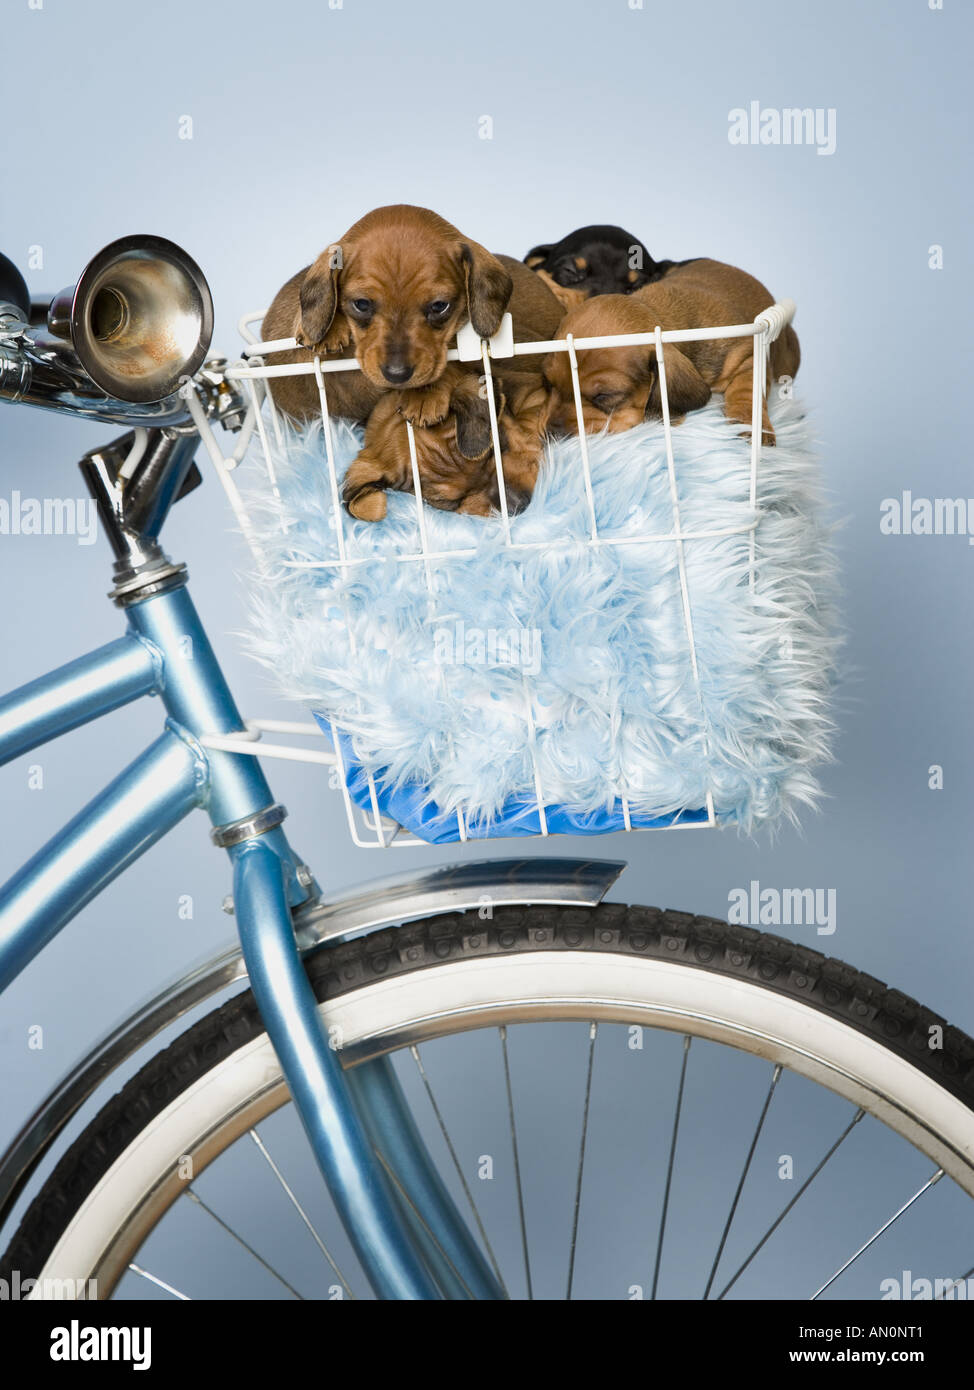 Nahaufnahme von Dackel Welpen sitzen in einem Fahrradkorb Stockfotografie -  Alamy